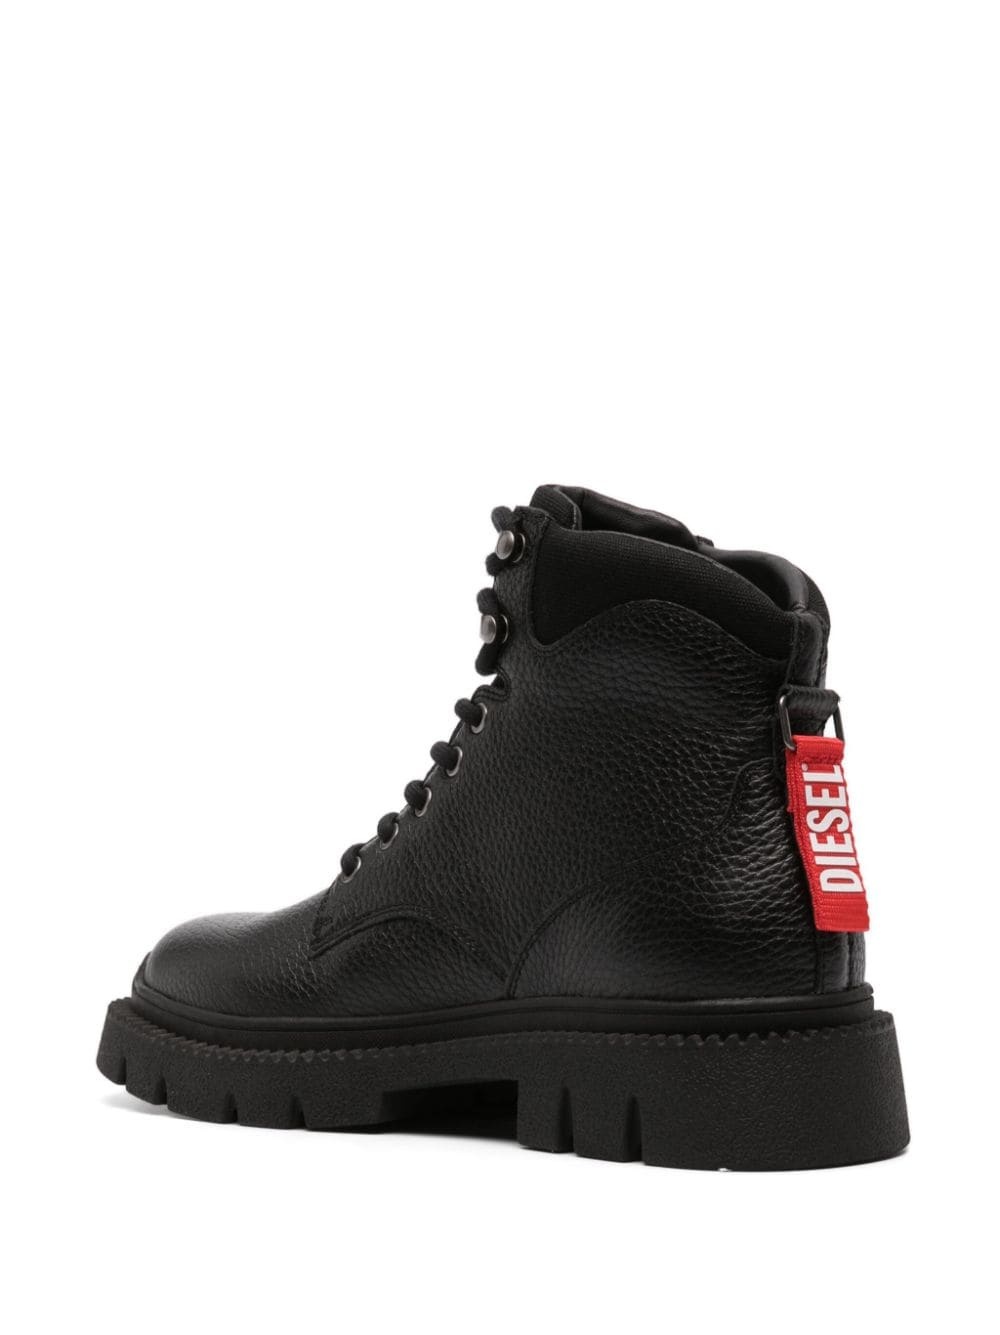 D-Troit leather boots - 3